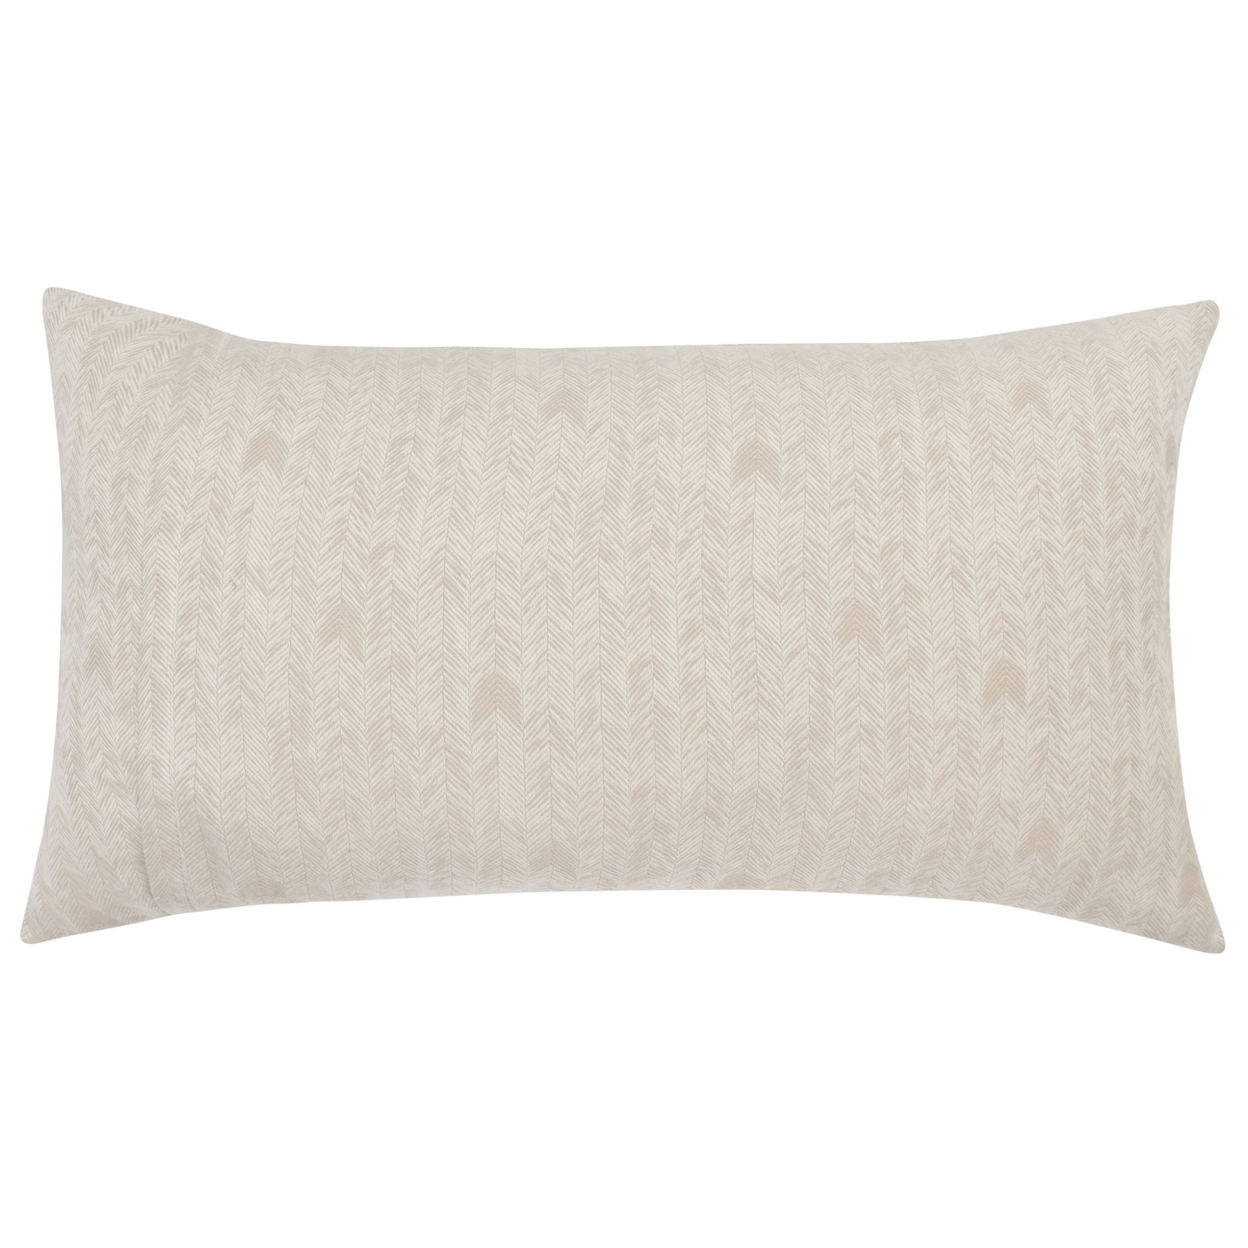 Zima 20 X 36 Lumbar King Pillow Sham With Woven Herringbone Pattern, Beige- Saltoro Sherpi